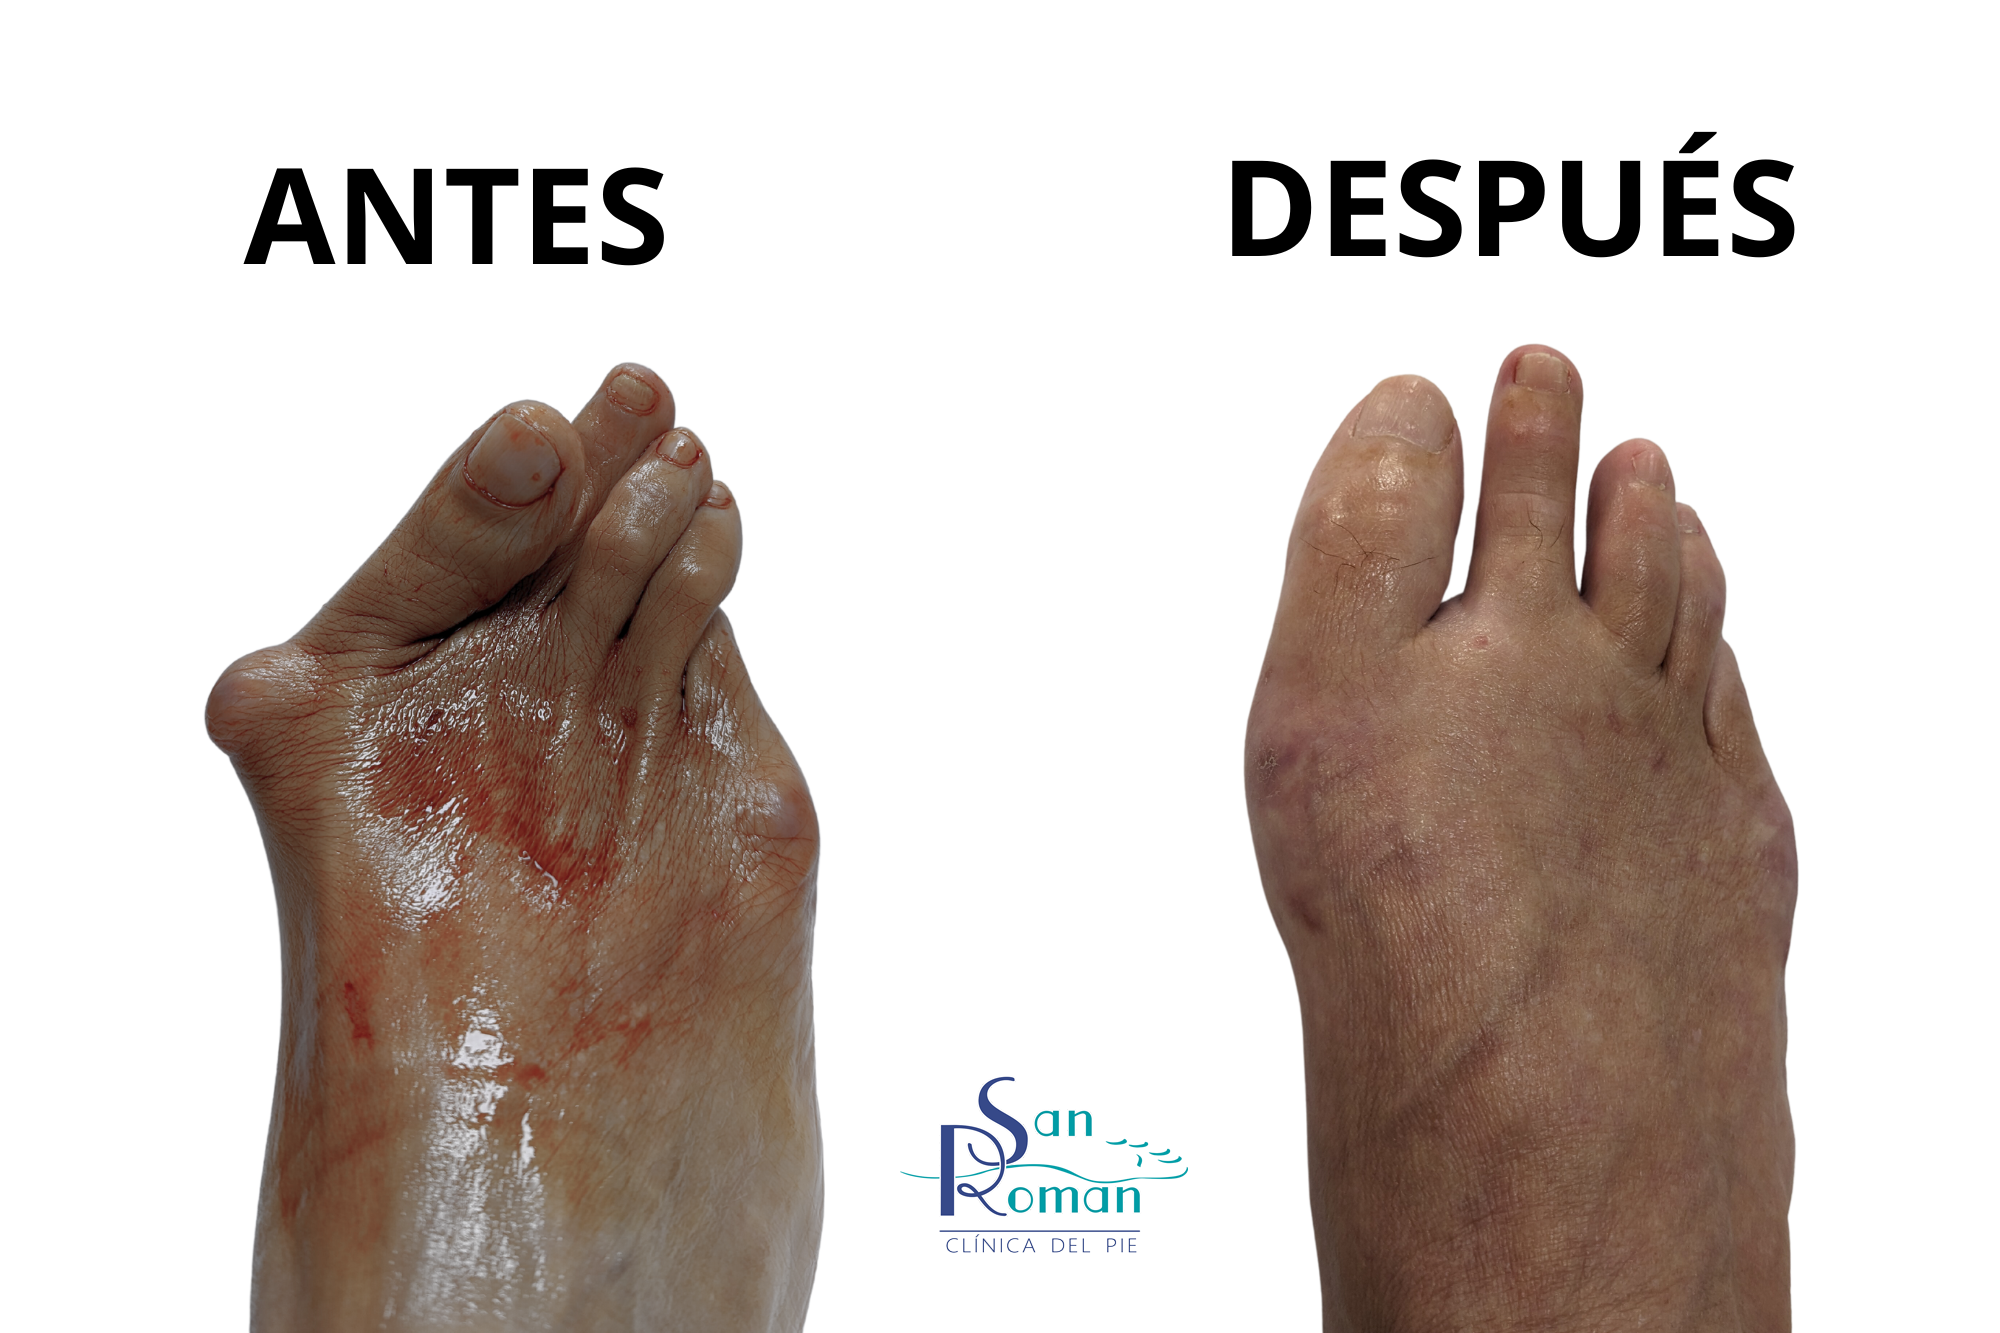 deformidades del pie antes y después de la cirugía mínima invasiva